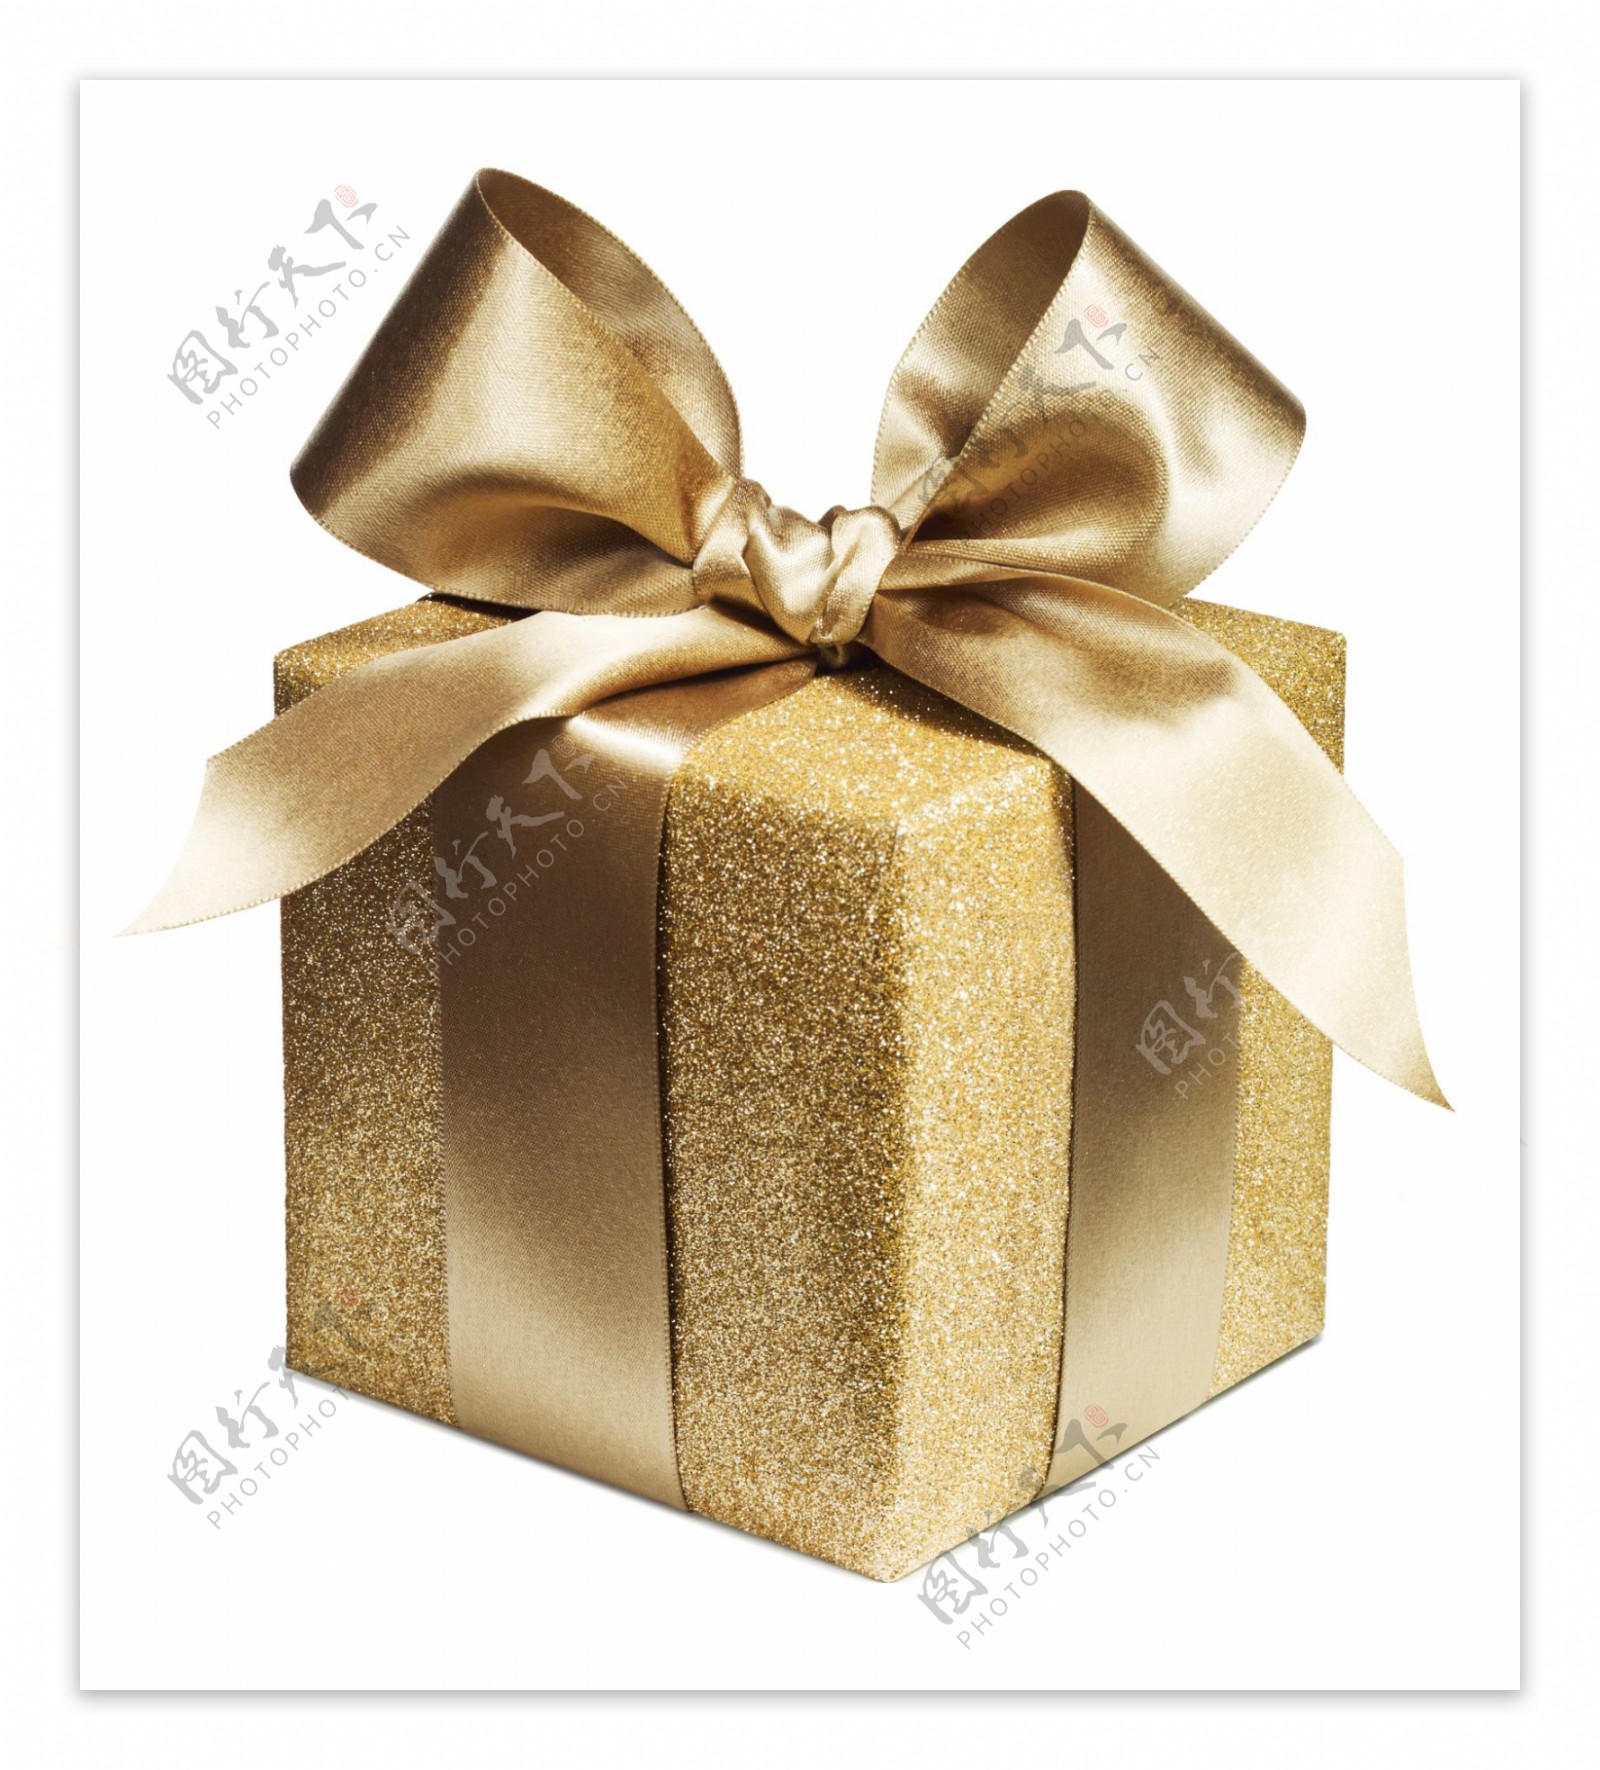 金色礼品盒图片